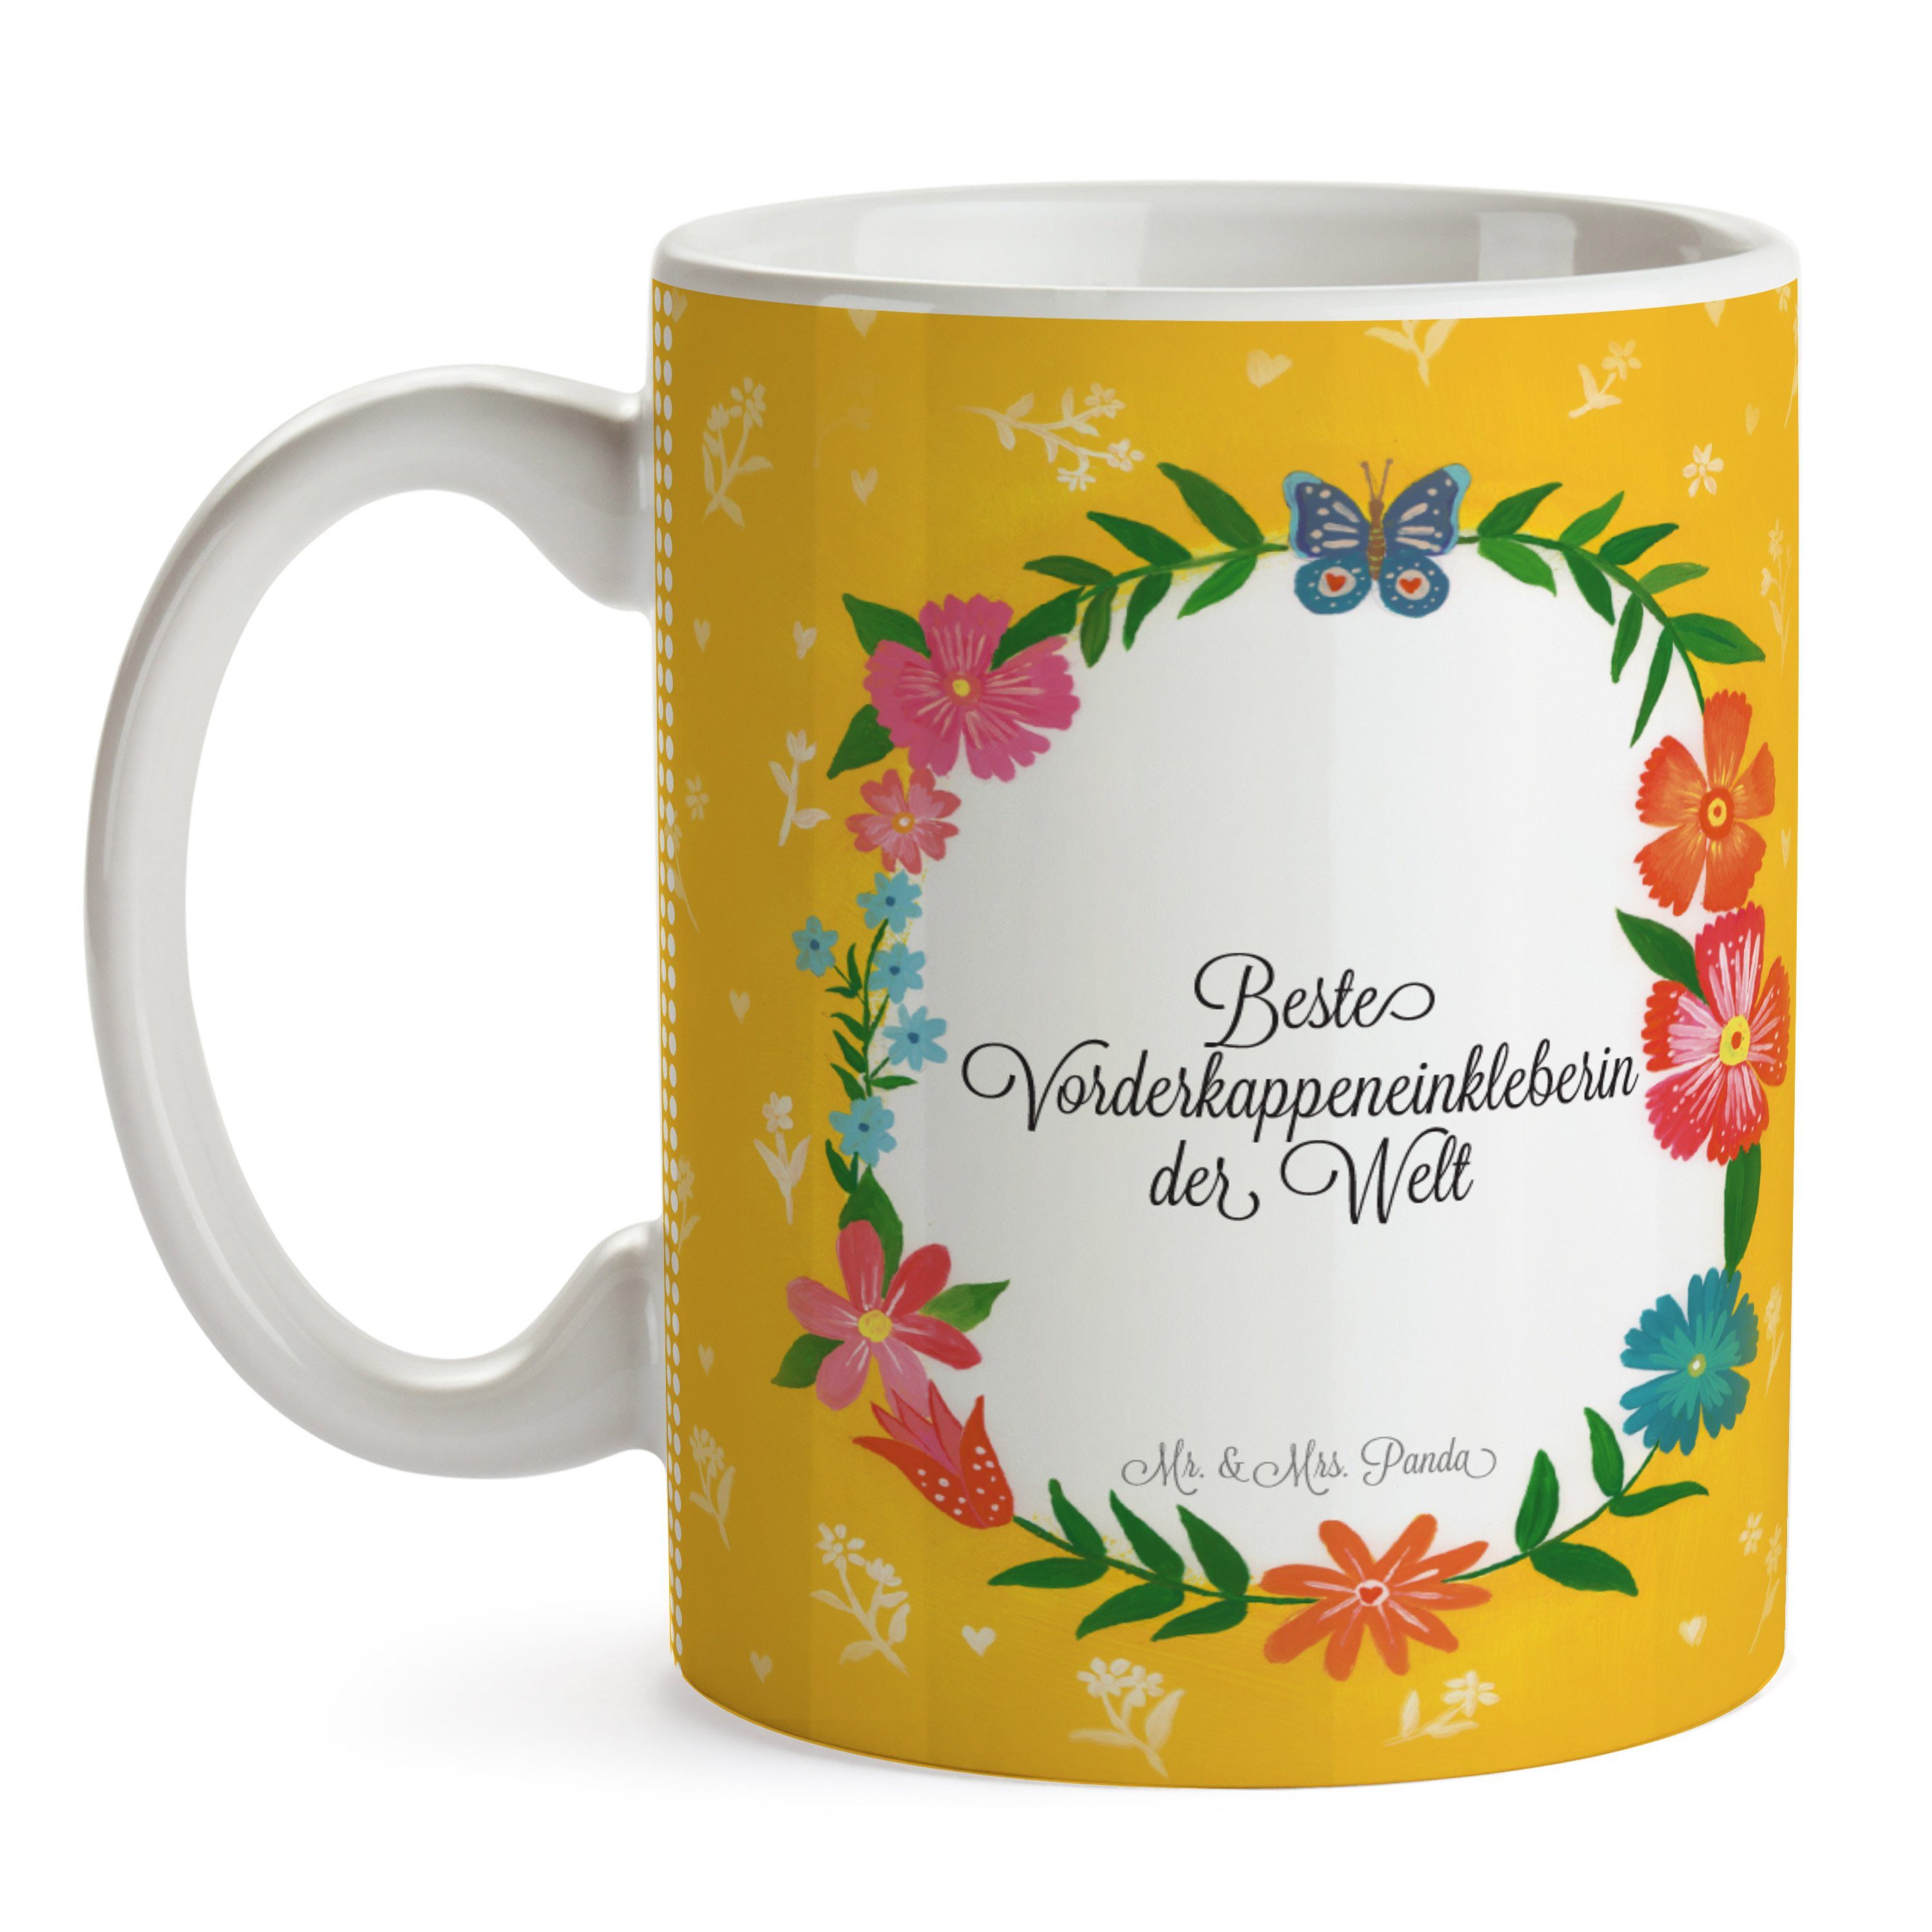 Keramik R, Mr. Abschluss, Vorderkappeneinkleberin Tasse Geschenk, Tasse, Kaffeebecher, & Mrs. Panda -